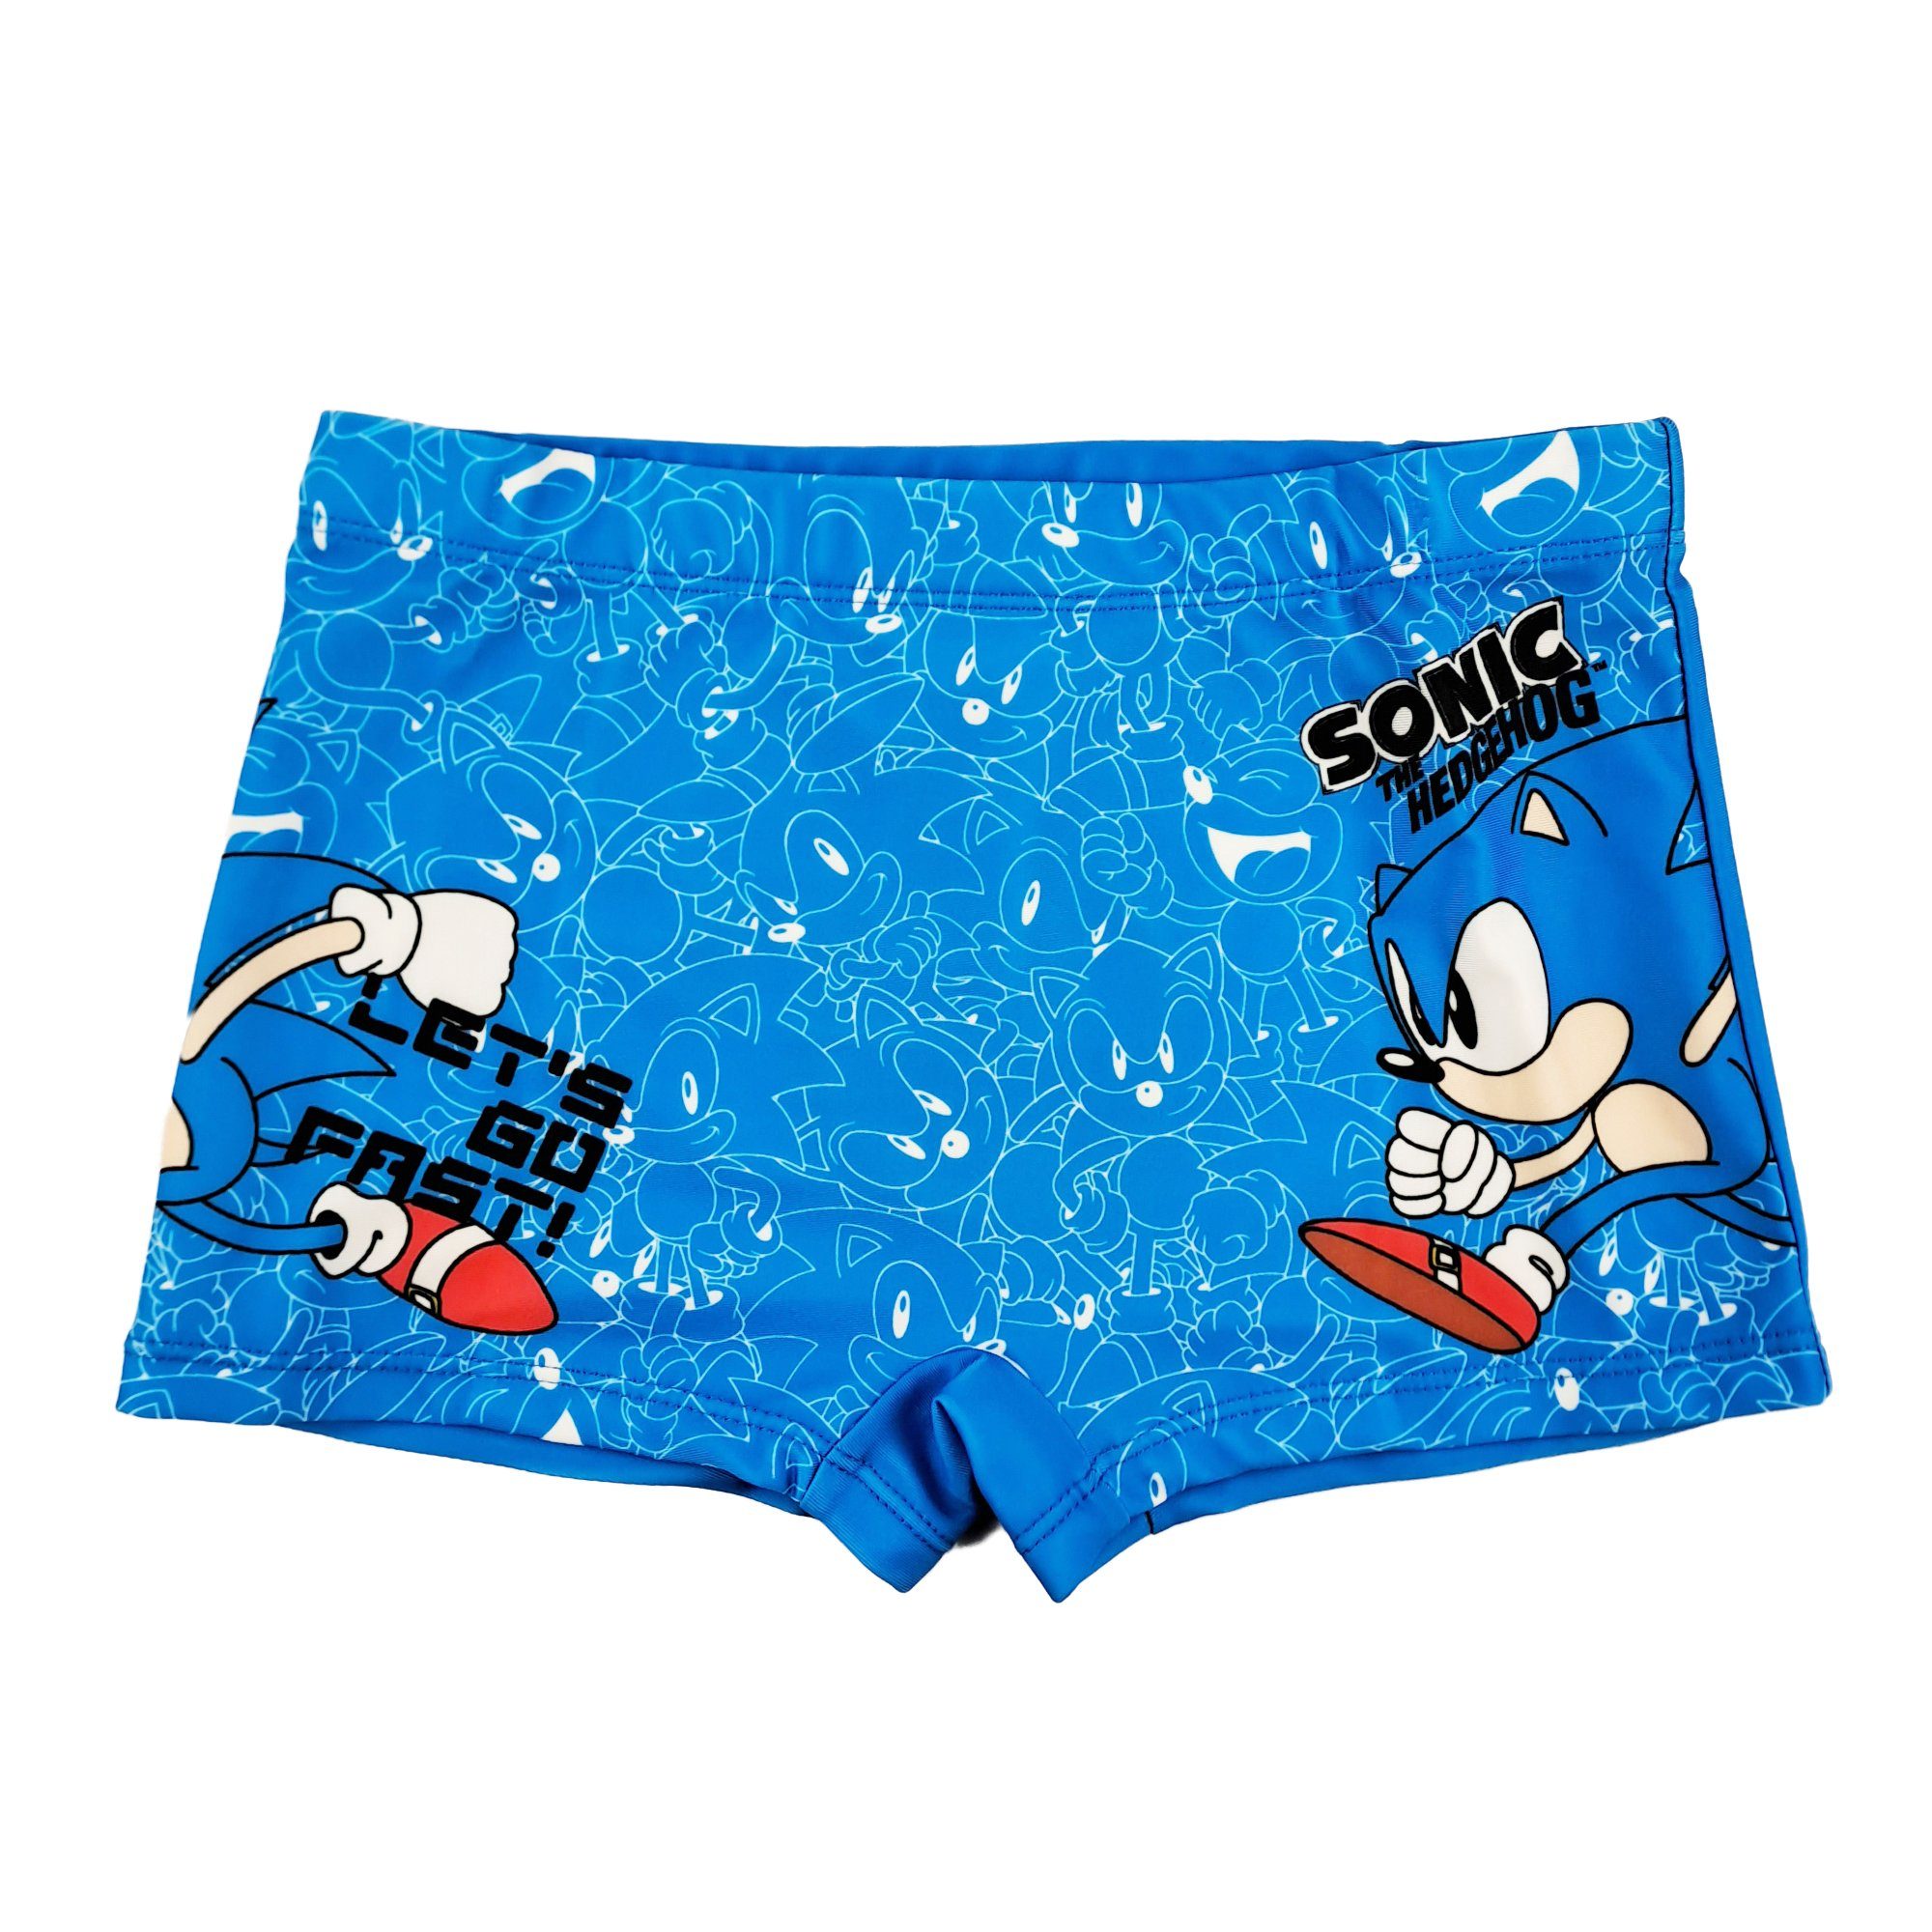 Sonic SEGA Badehose Sonic Jungen Gr. Kinder 92 bis 128 Badehose